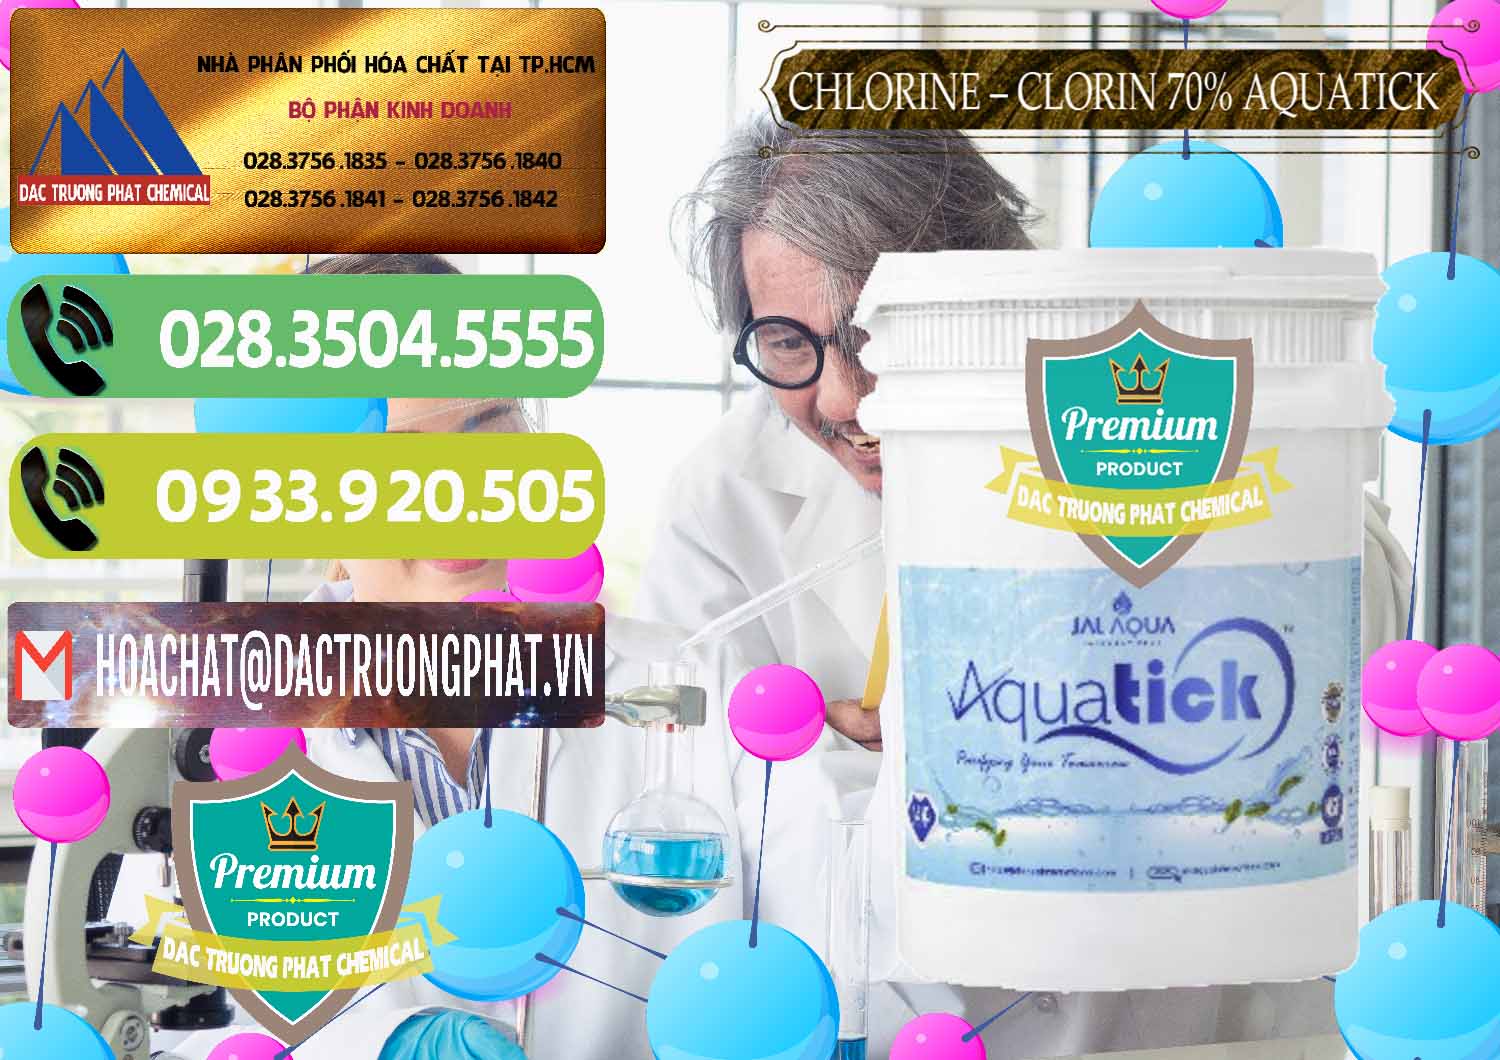 Đơn vị chuyên cung cấp _ bán Chlorine – Clorin 70% Aquatick Thùng Cao Jal Aqua Ấn Độ India - 0237 - Cty cung cấp _ phân phối hóa chất tại TP.HCM - hoachatmientay.vn